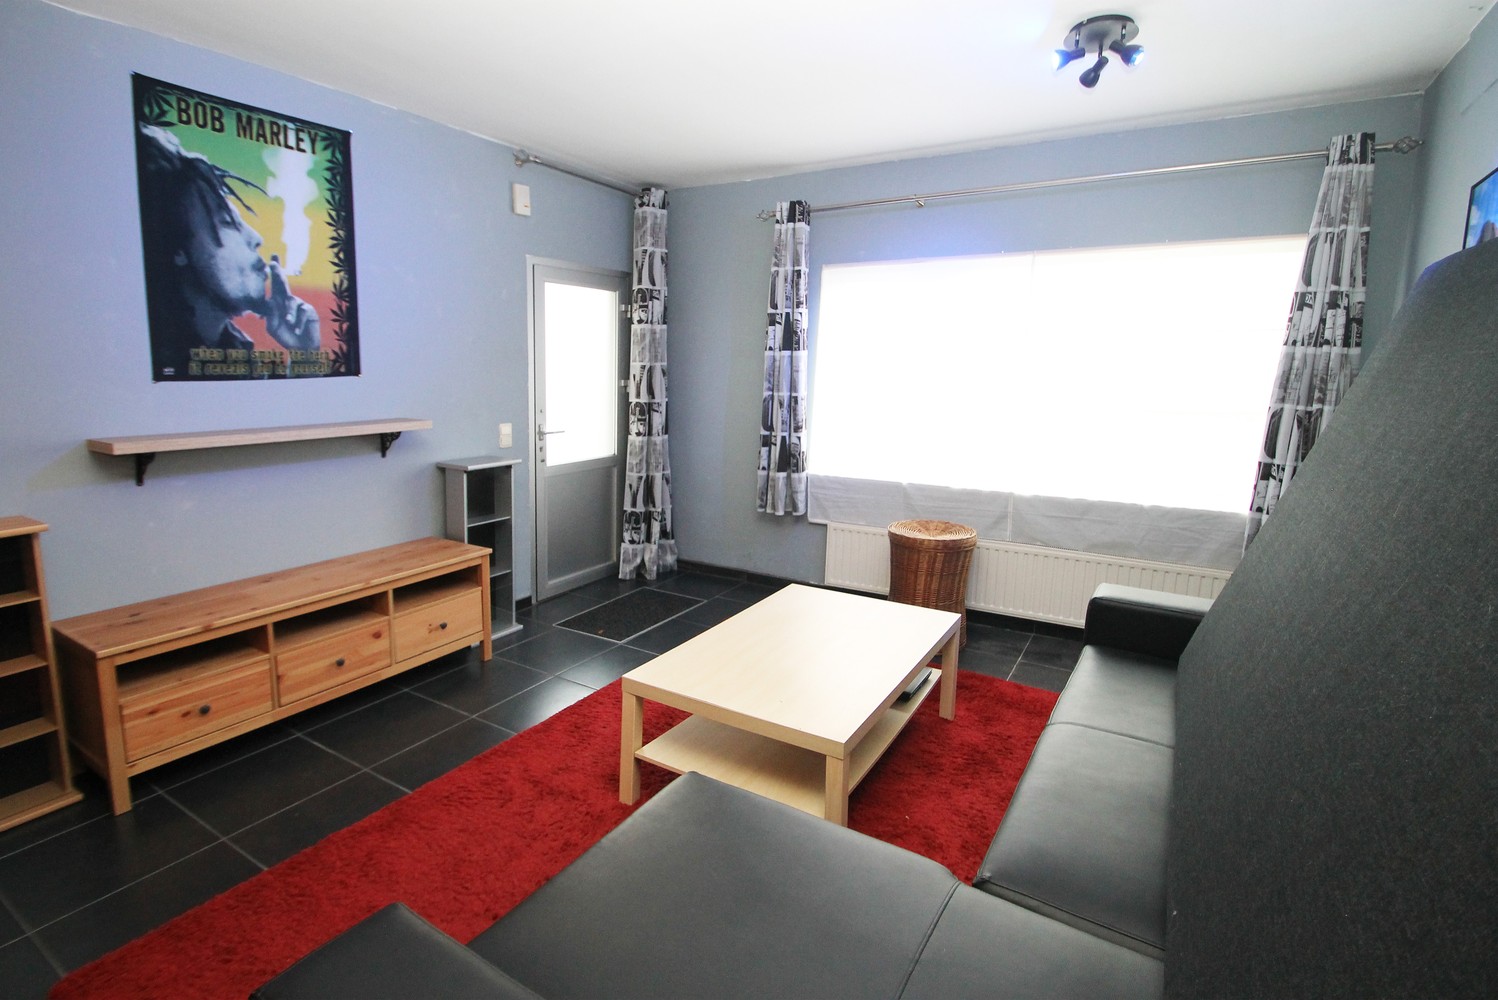 Instapklaar, gelijkvloers appartement met terras & één slaapkamer in Ranst! afbeelding 1